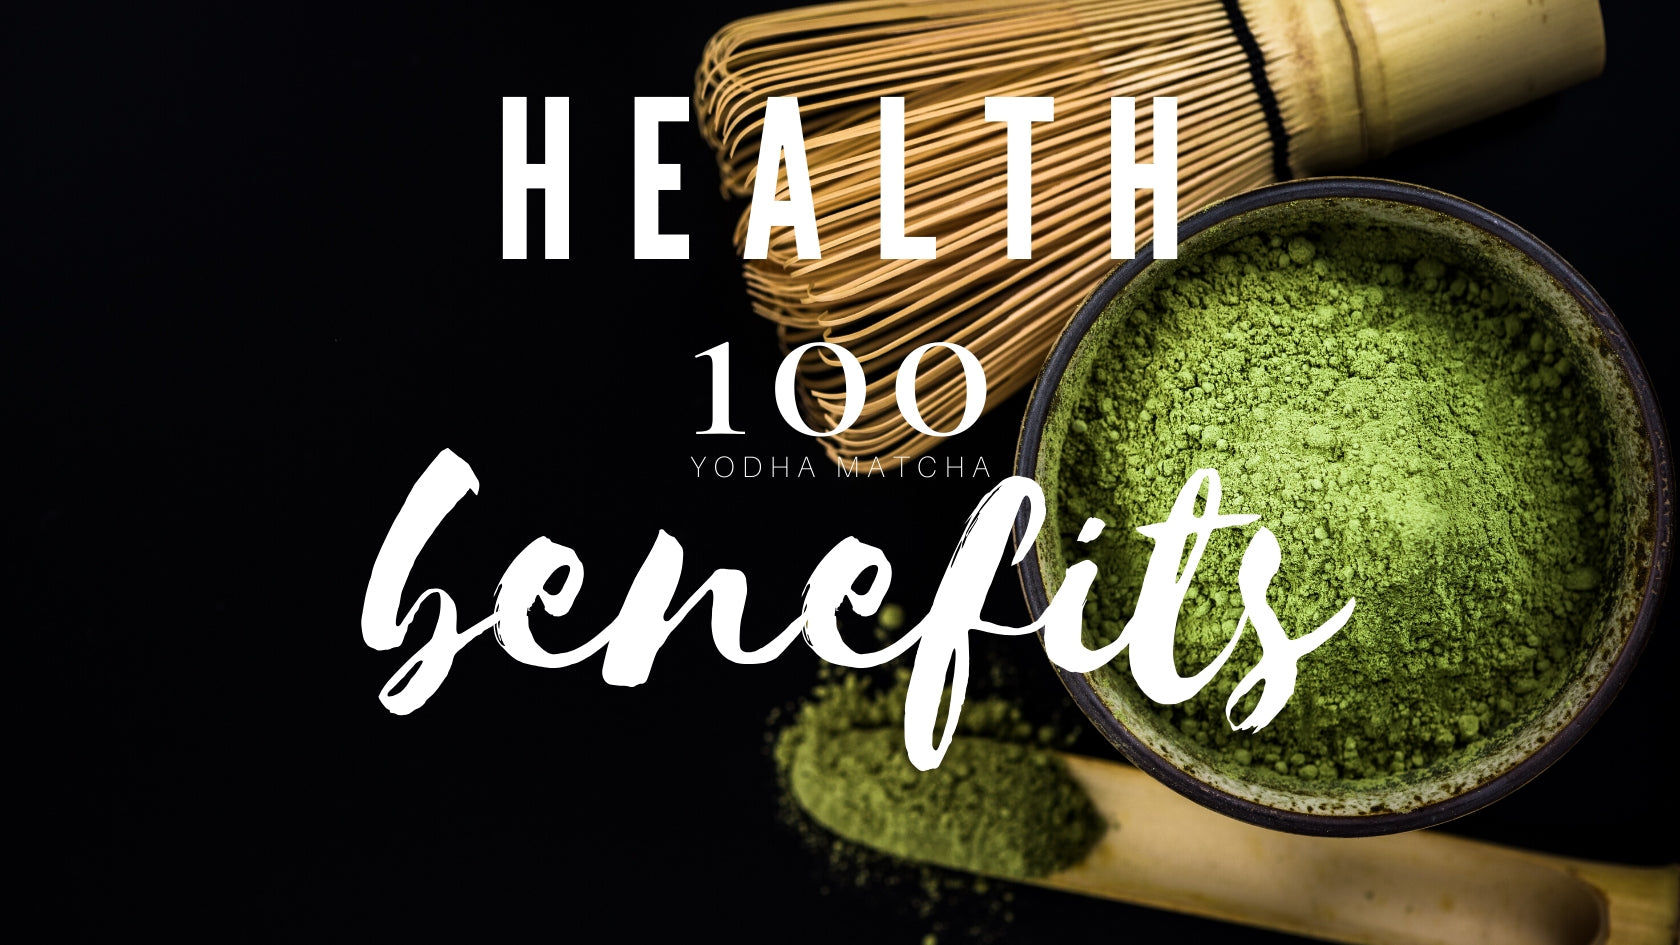 10 Proven Health Benefits Of Matcha Tea